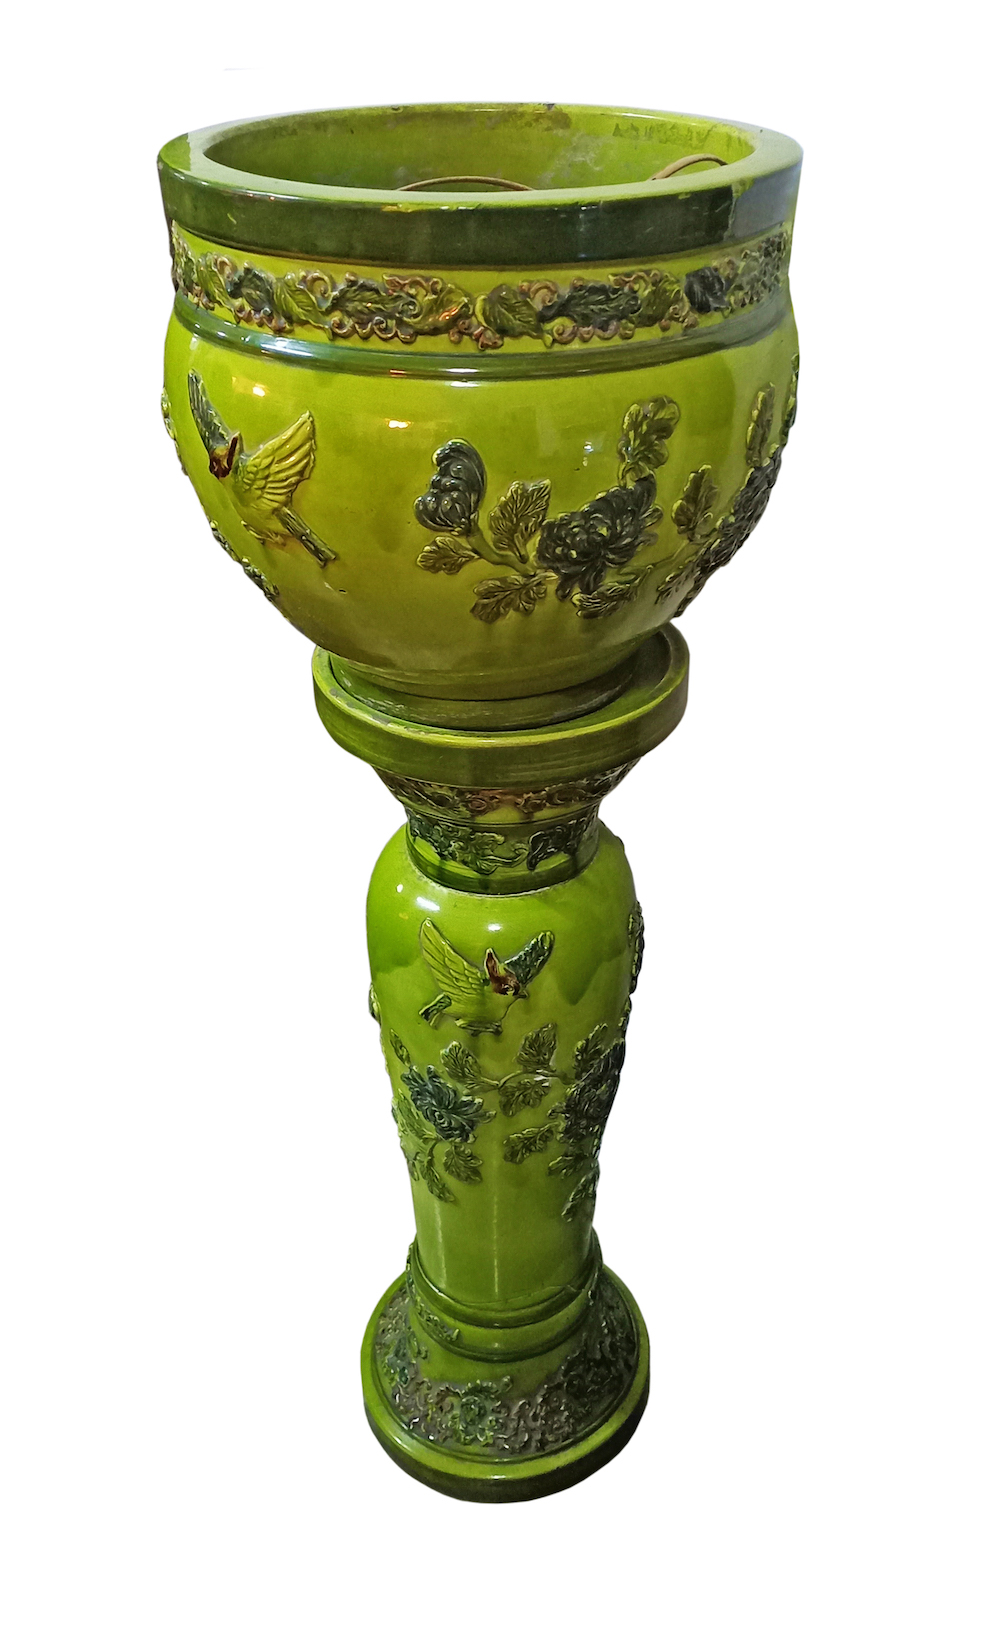 A majolica polychrome ceramic pot and stand